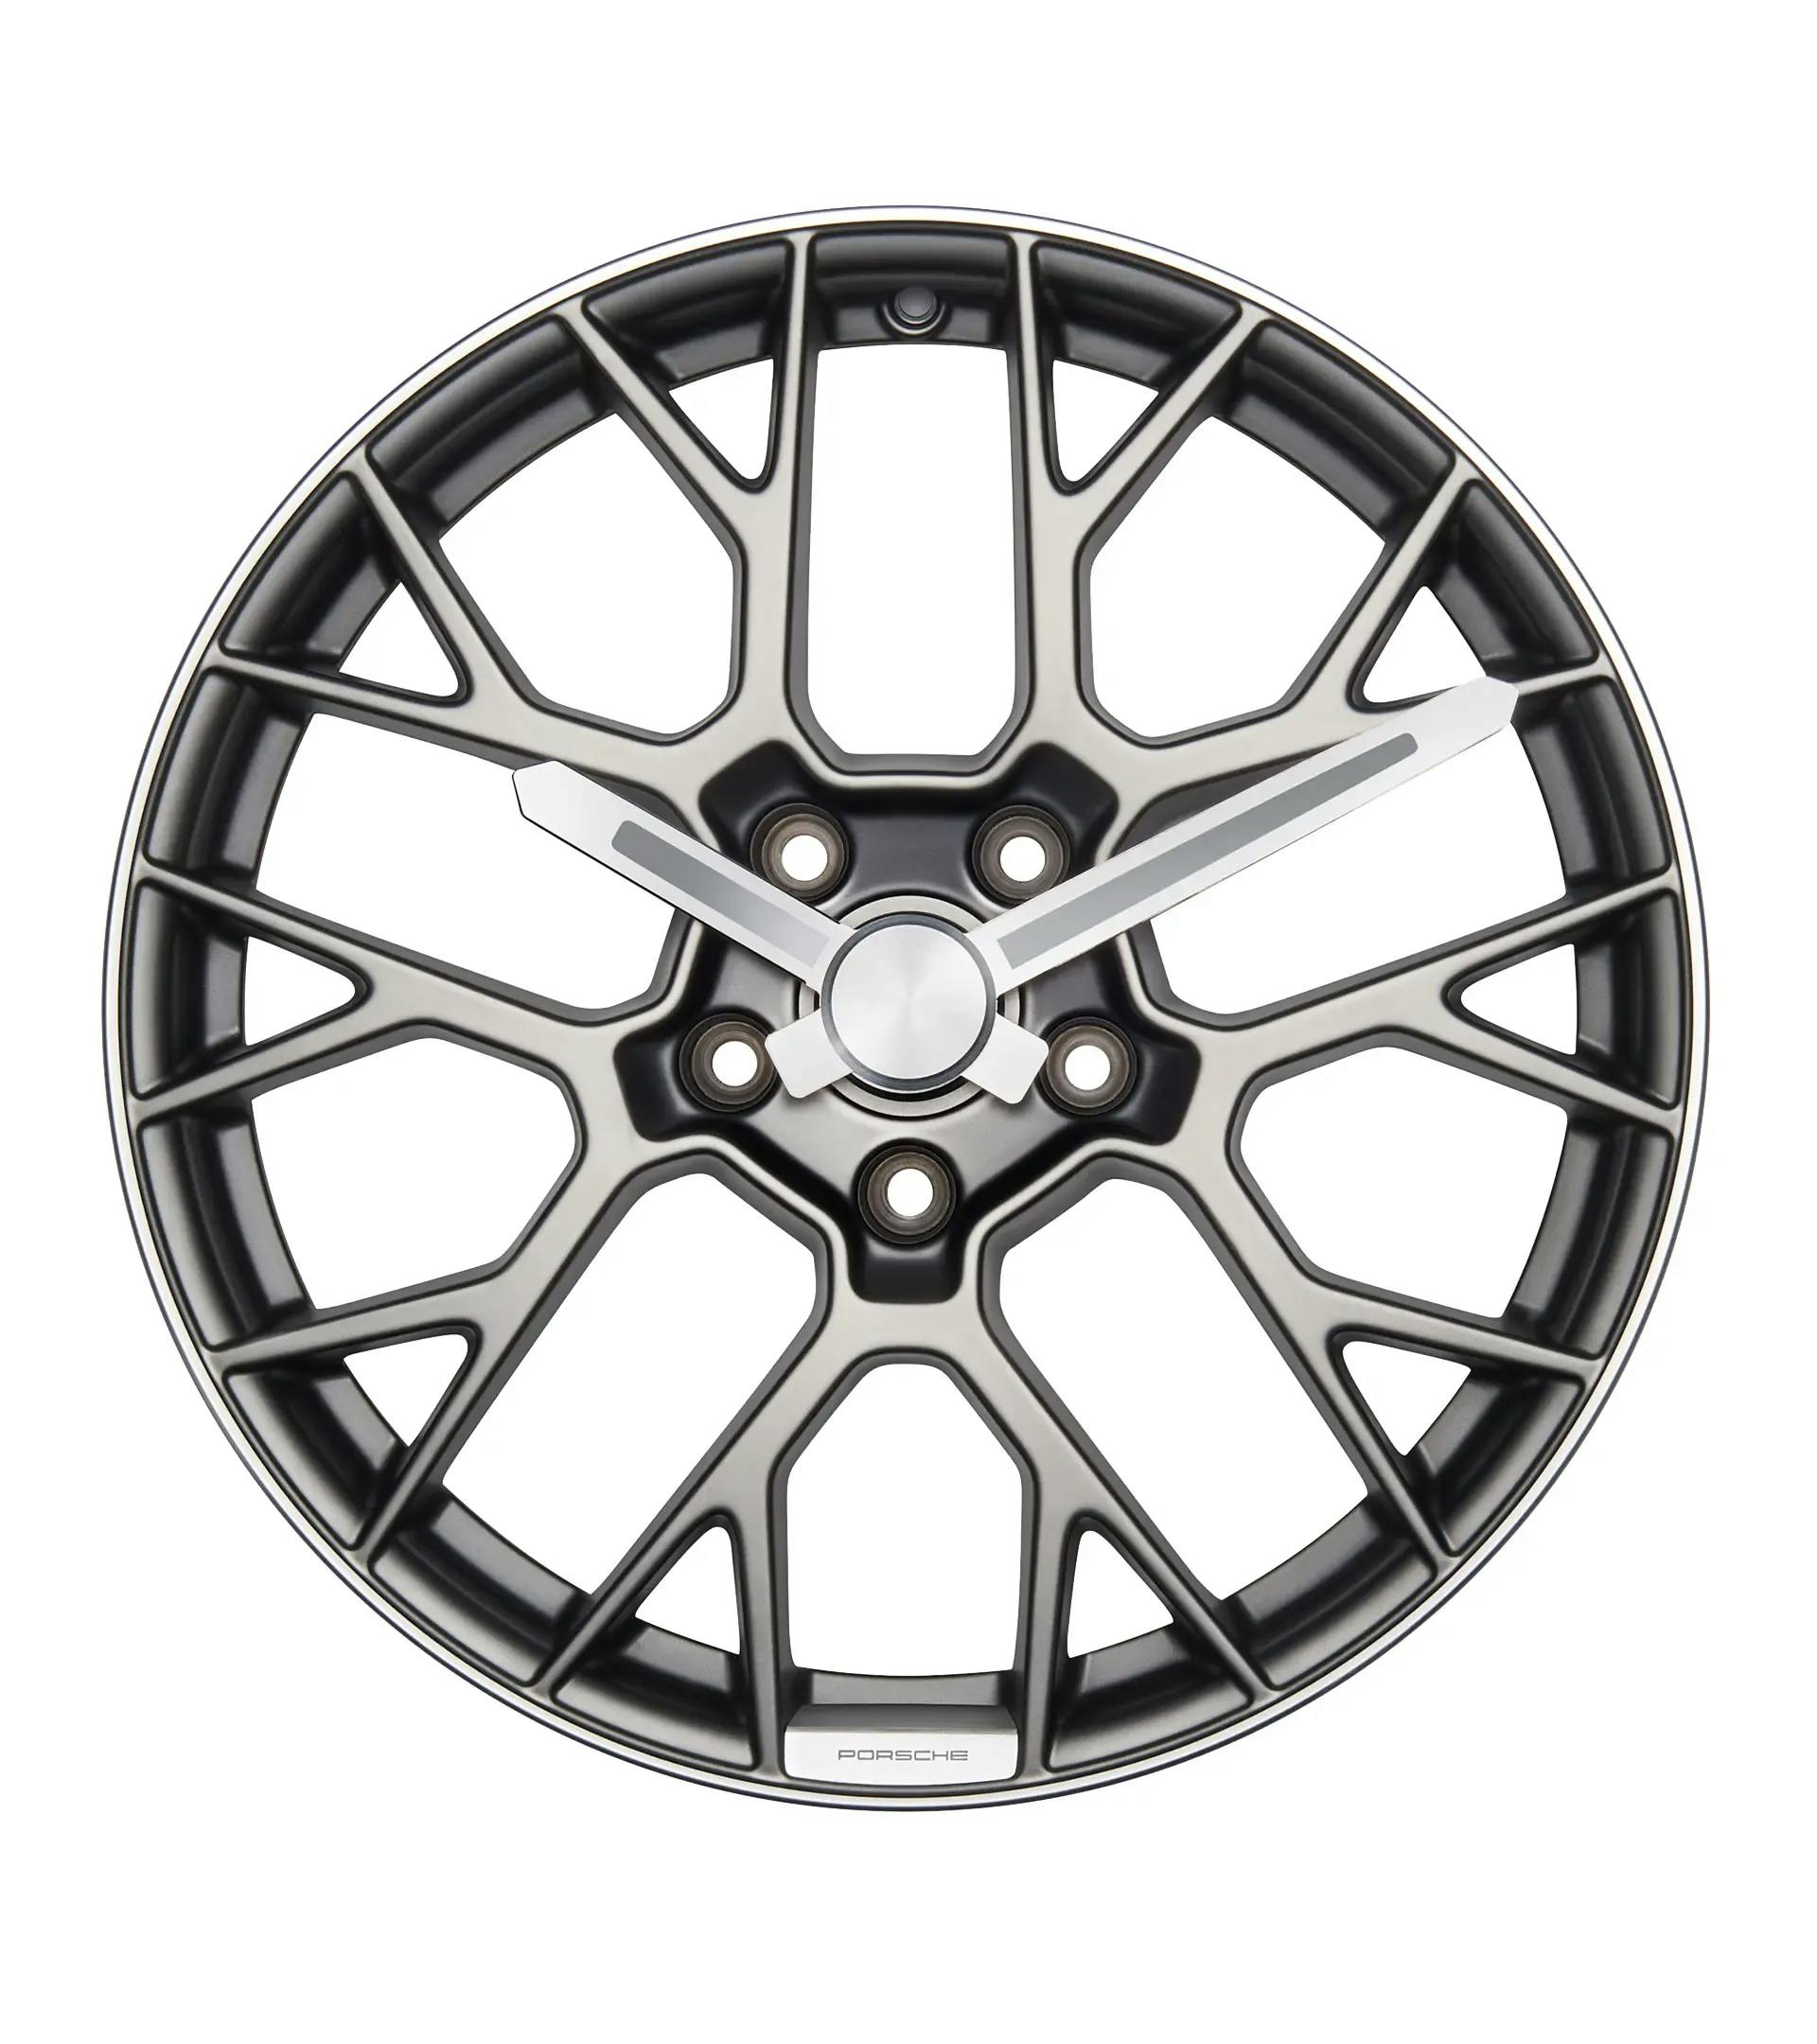 Wheel rim wall clock – Porsche Originals 1